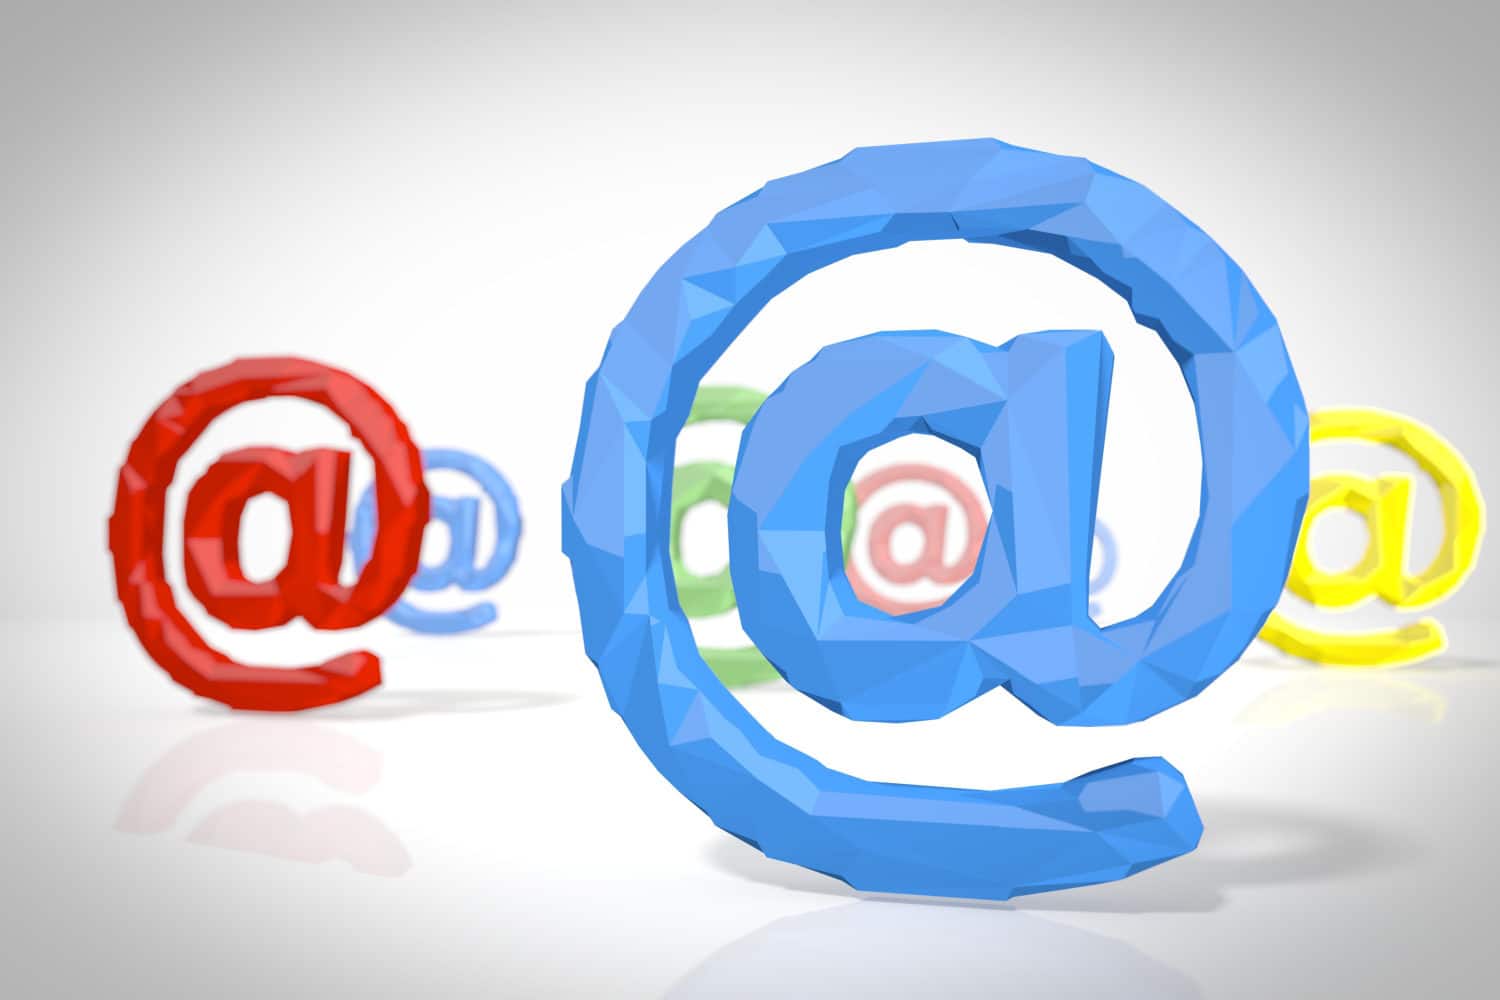 Das Bild zeigt mehrere @-Zeichen, wie man sie in E-Mail-Adressen üblicherweise benutzt. Die Zeichen sind rot, blau, grün und gelb und dreidimensional im Raum angeordnet.